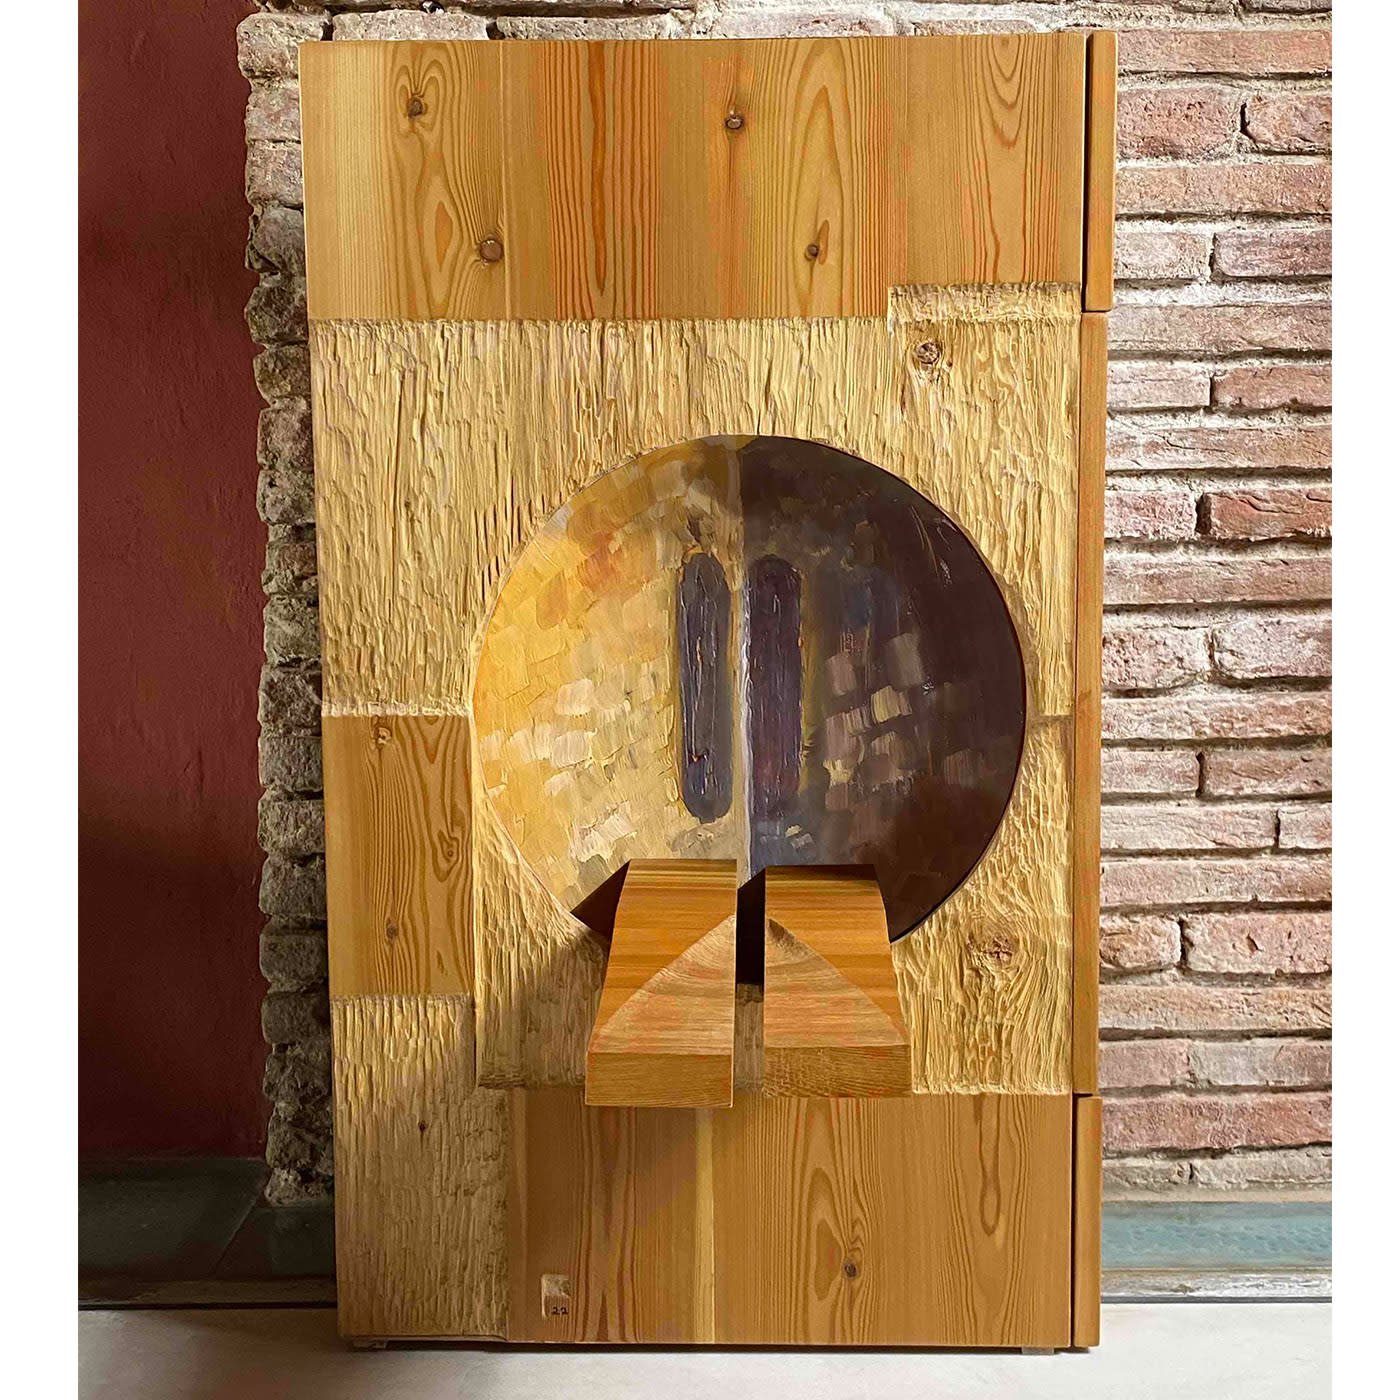 Valigia Due Sideboard by Pietro Meccani - Meccani Design